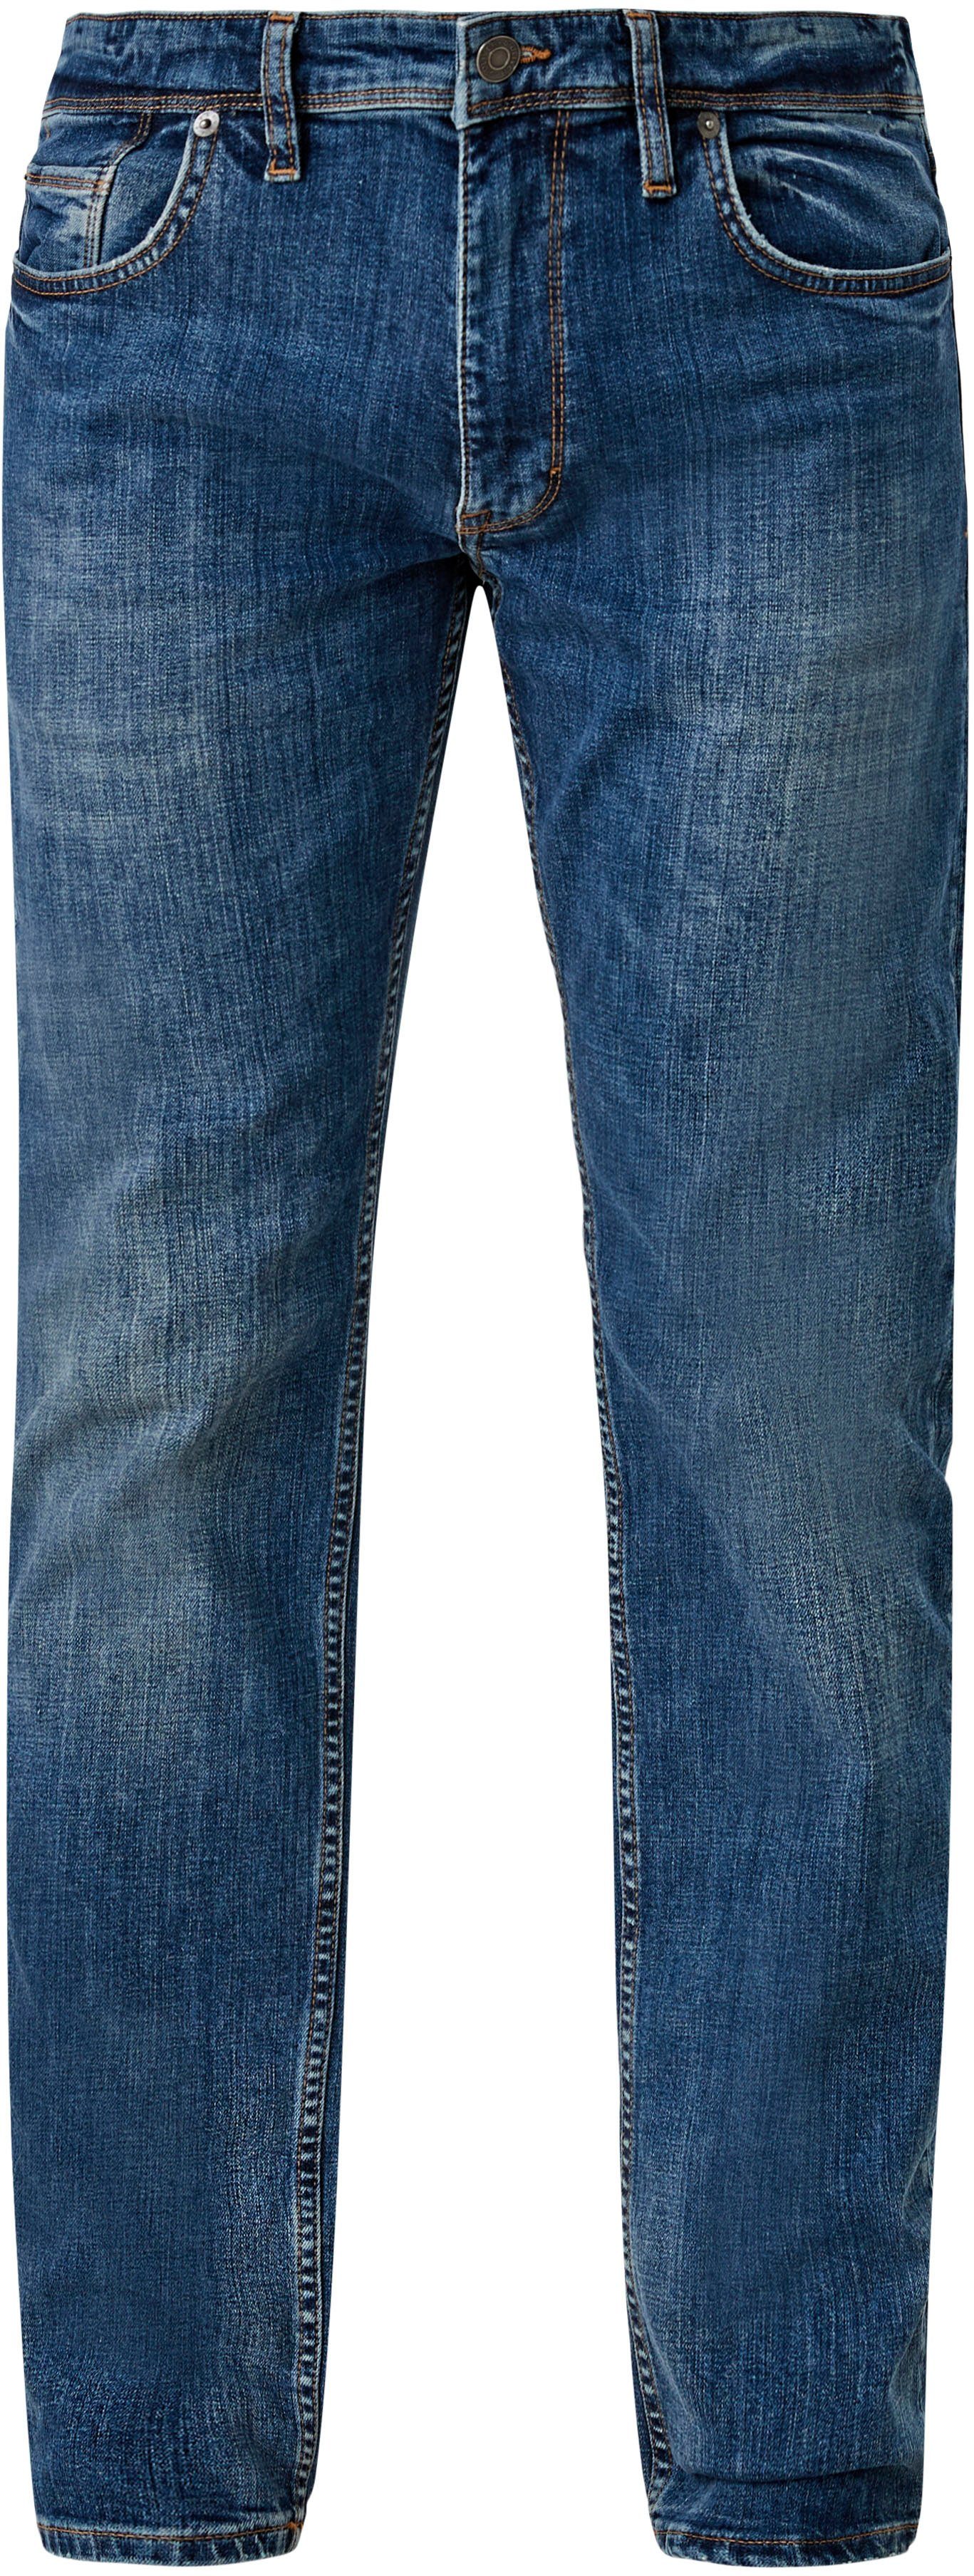 authentischer Waschung 5-Pocket-Jeans ozeanblau mit s.Oliver